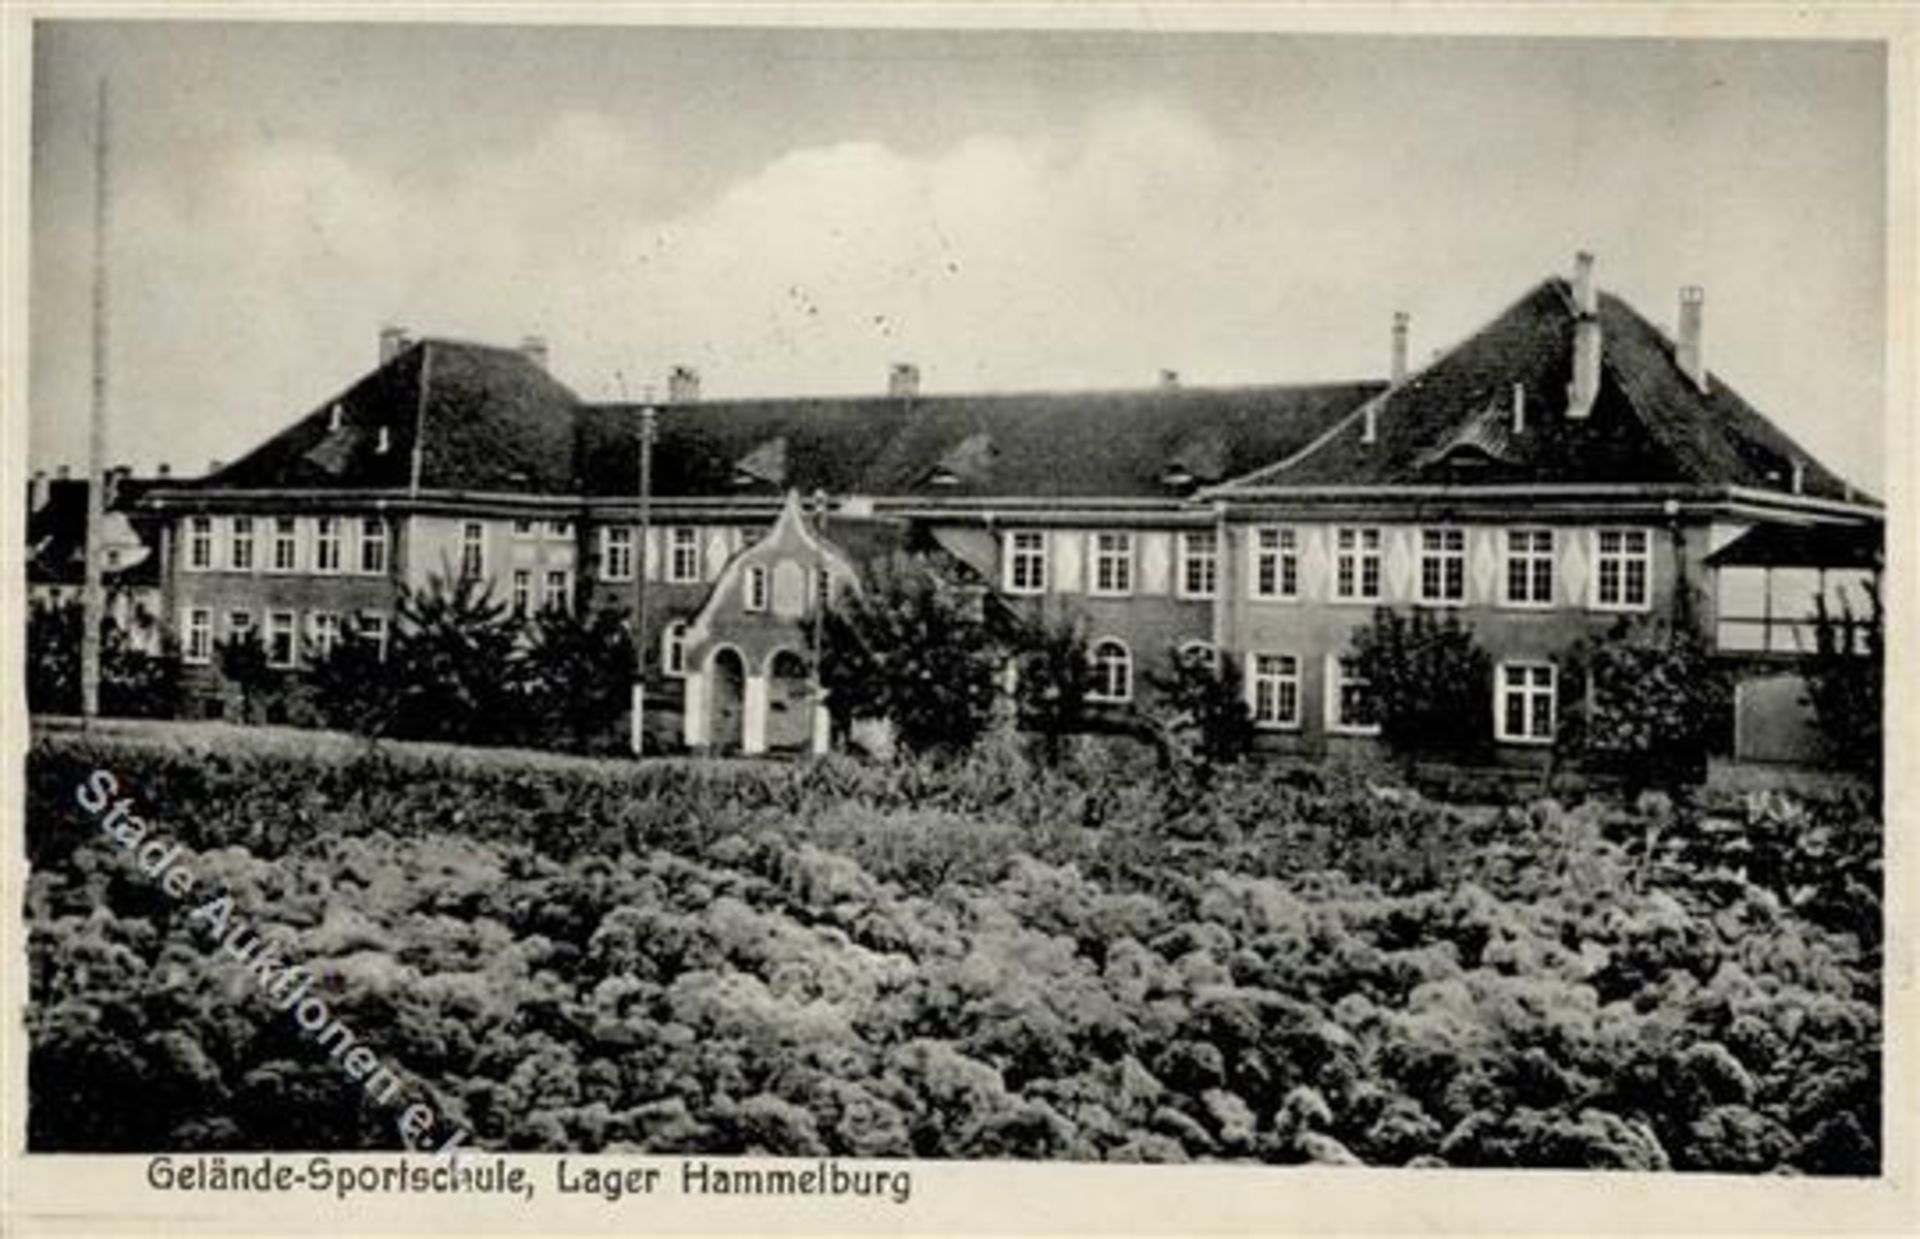 HAMMELBURG (8783) - Gelände-SPORTSCHULE im Lager Hammelburg IDieses Los wird in einer online-Auktion